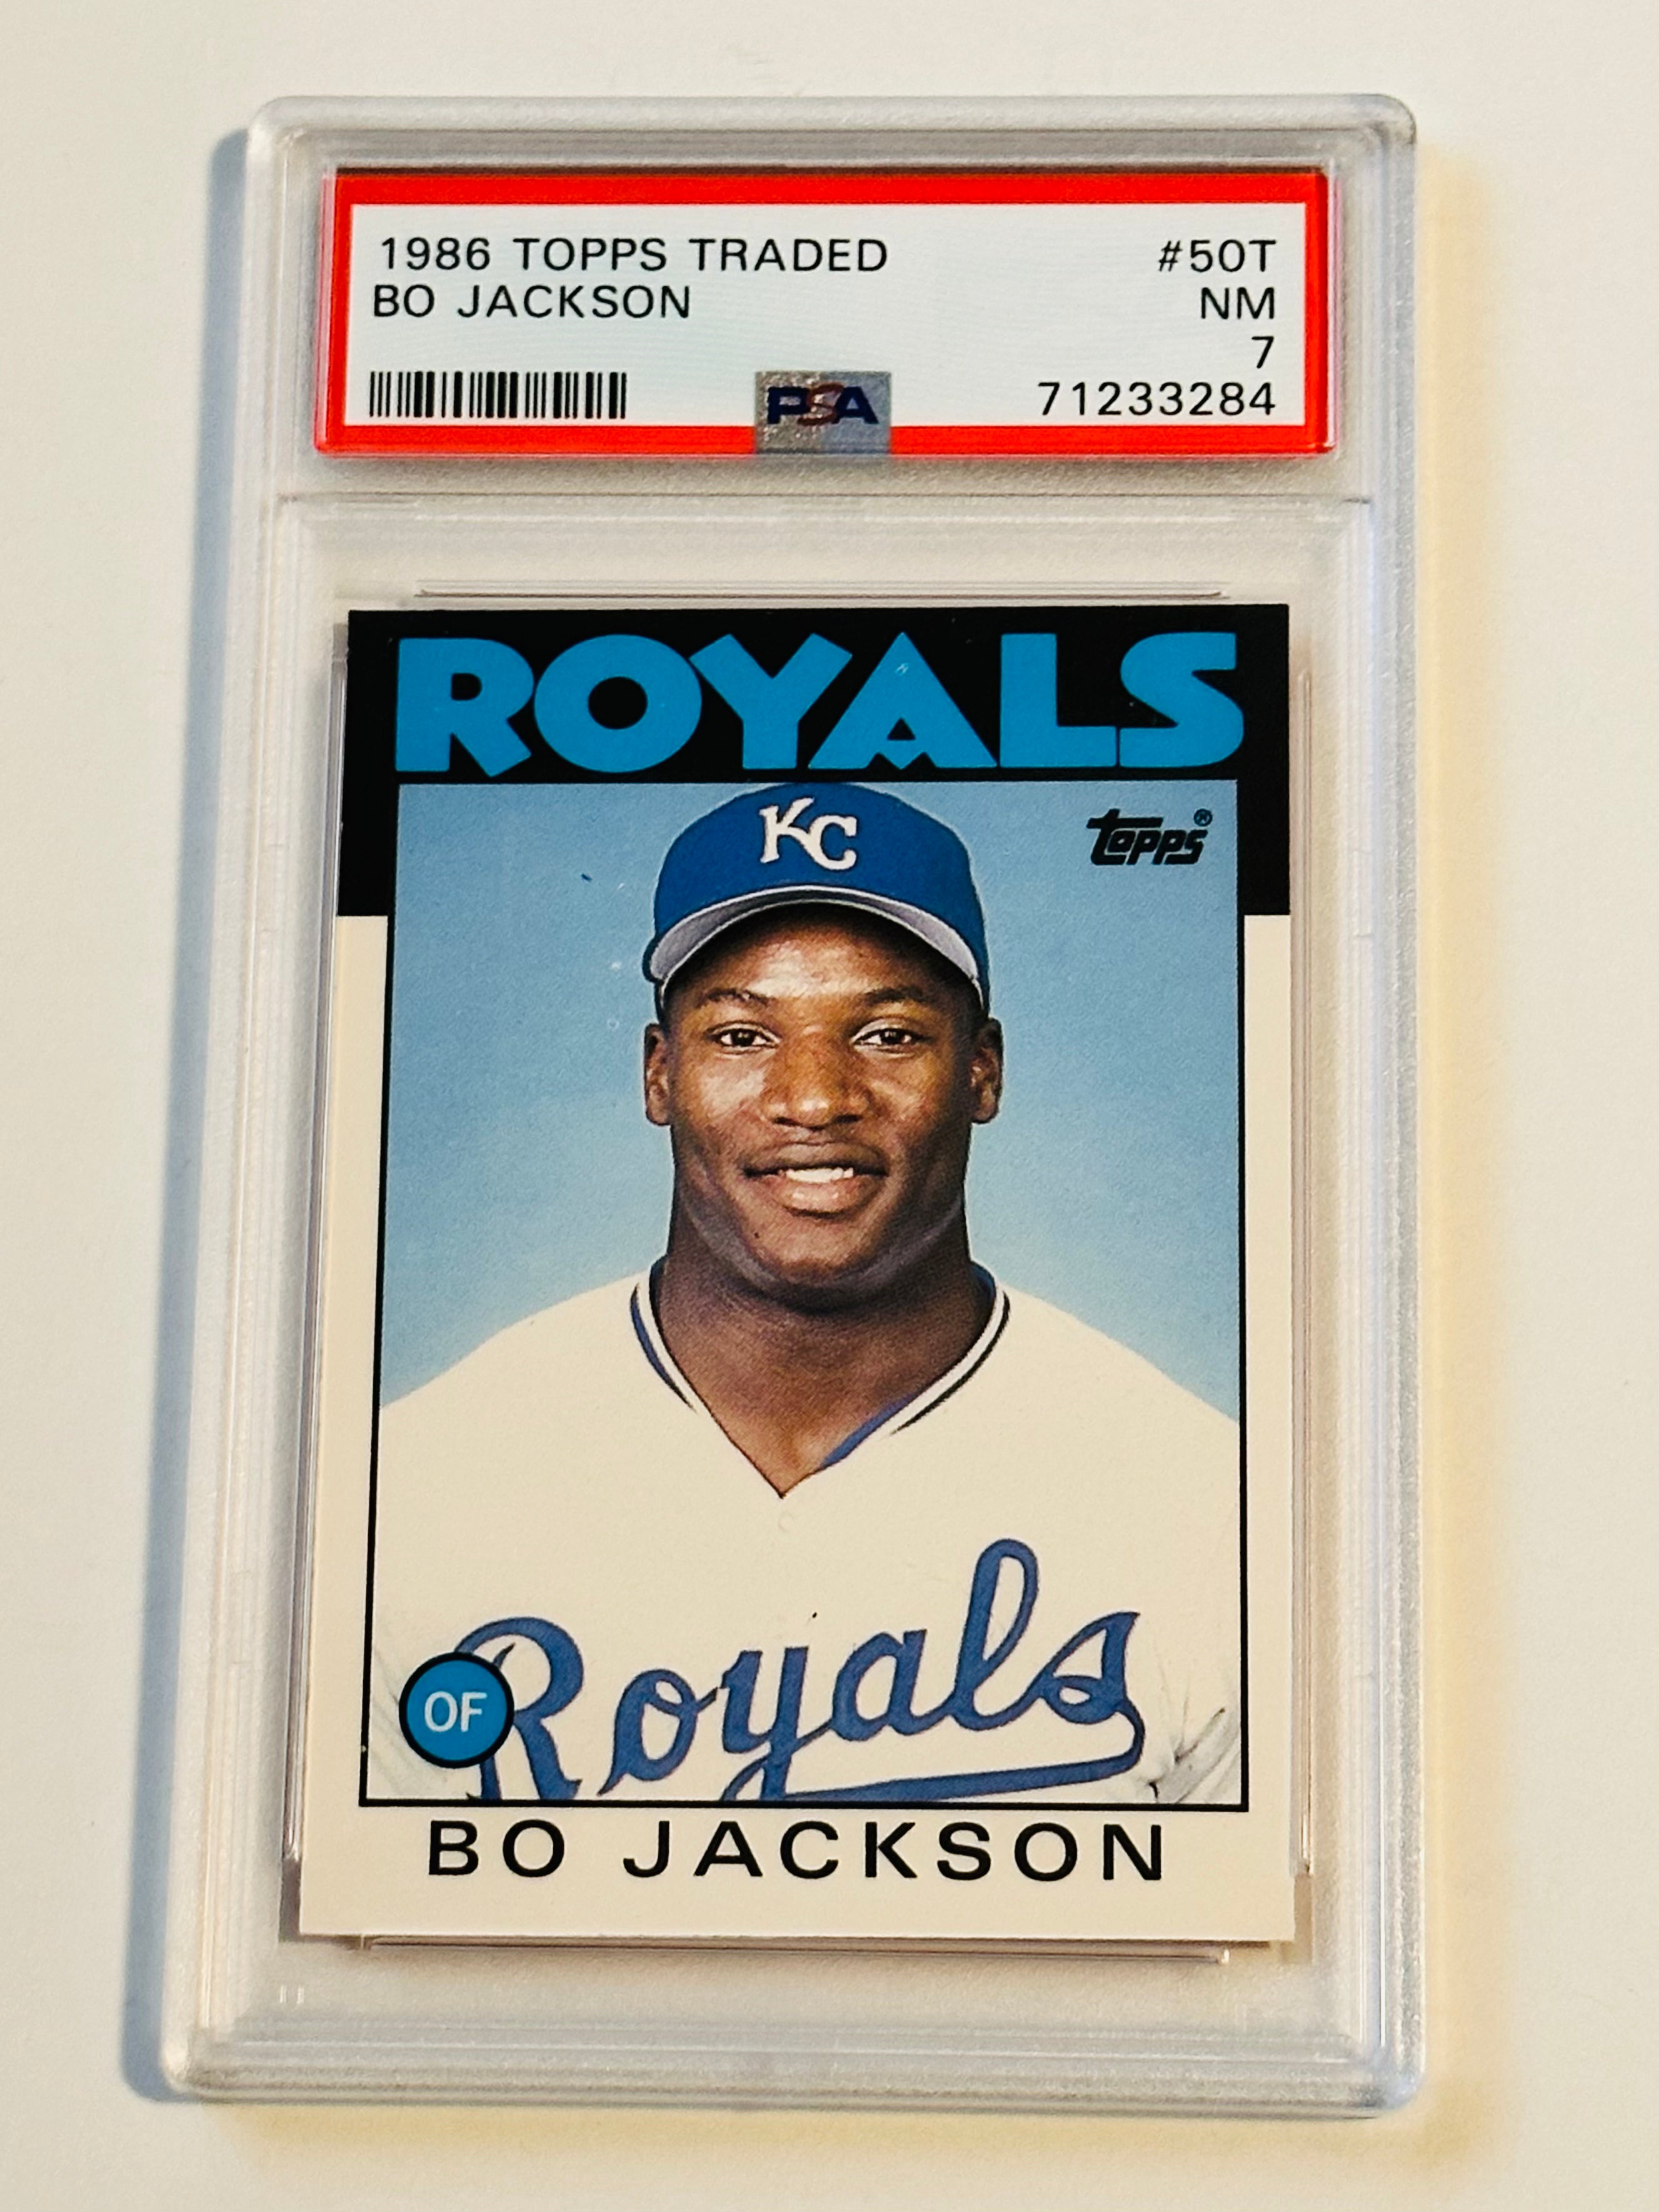 Bo Jackson baseball Topps traded rookie card 1986 PSA graded 7